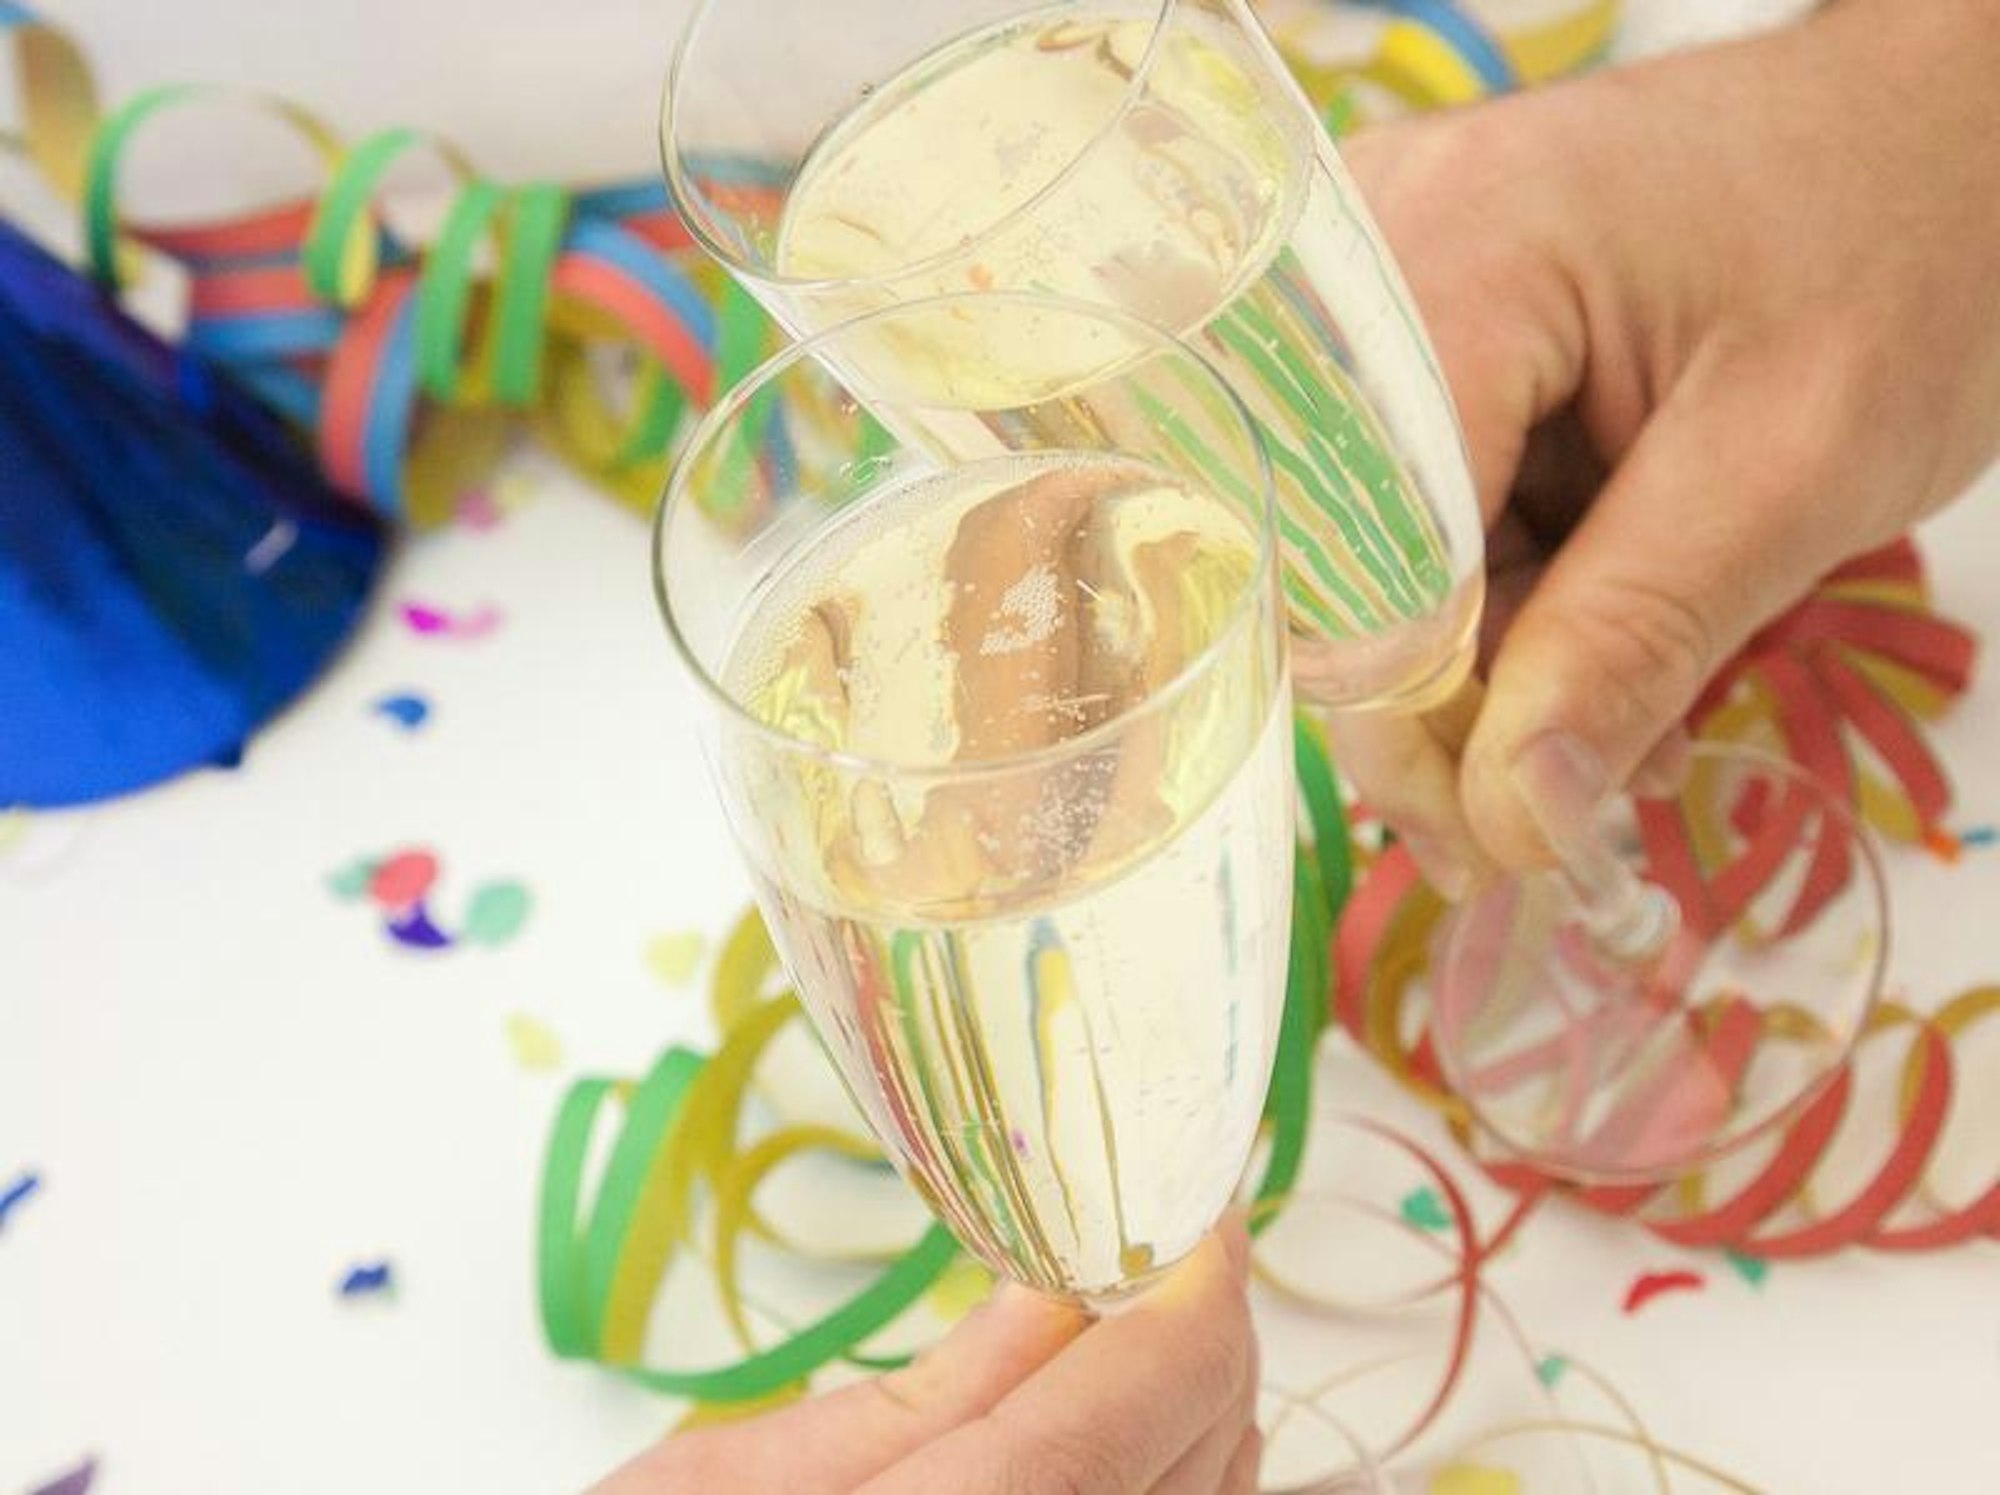 Feiern mit Freunden in der Wohnung ist gemütlich - doch eine Party sollte nicht zu laut werden.